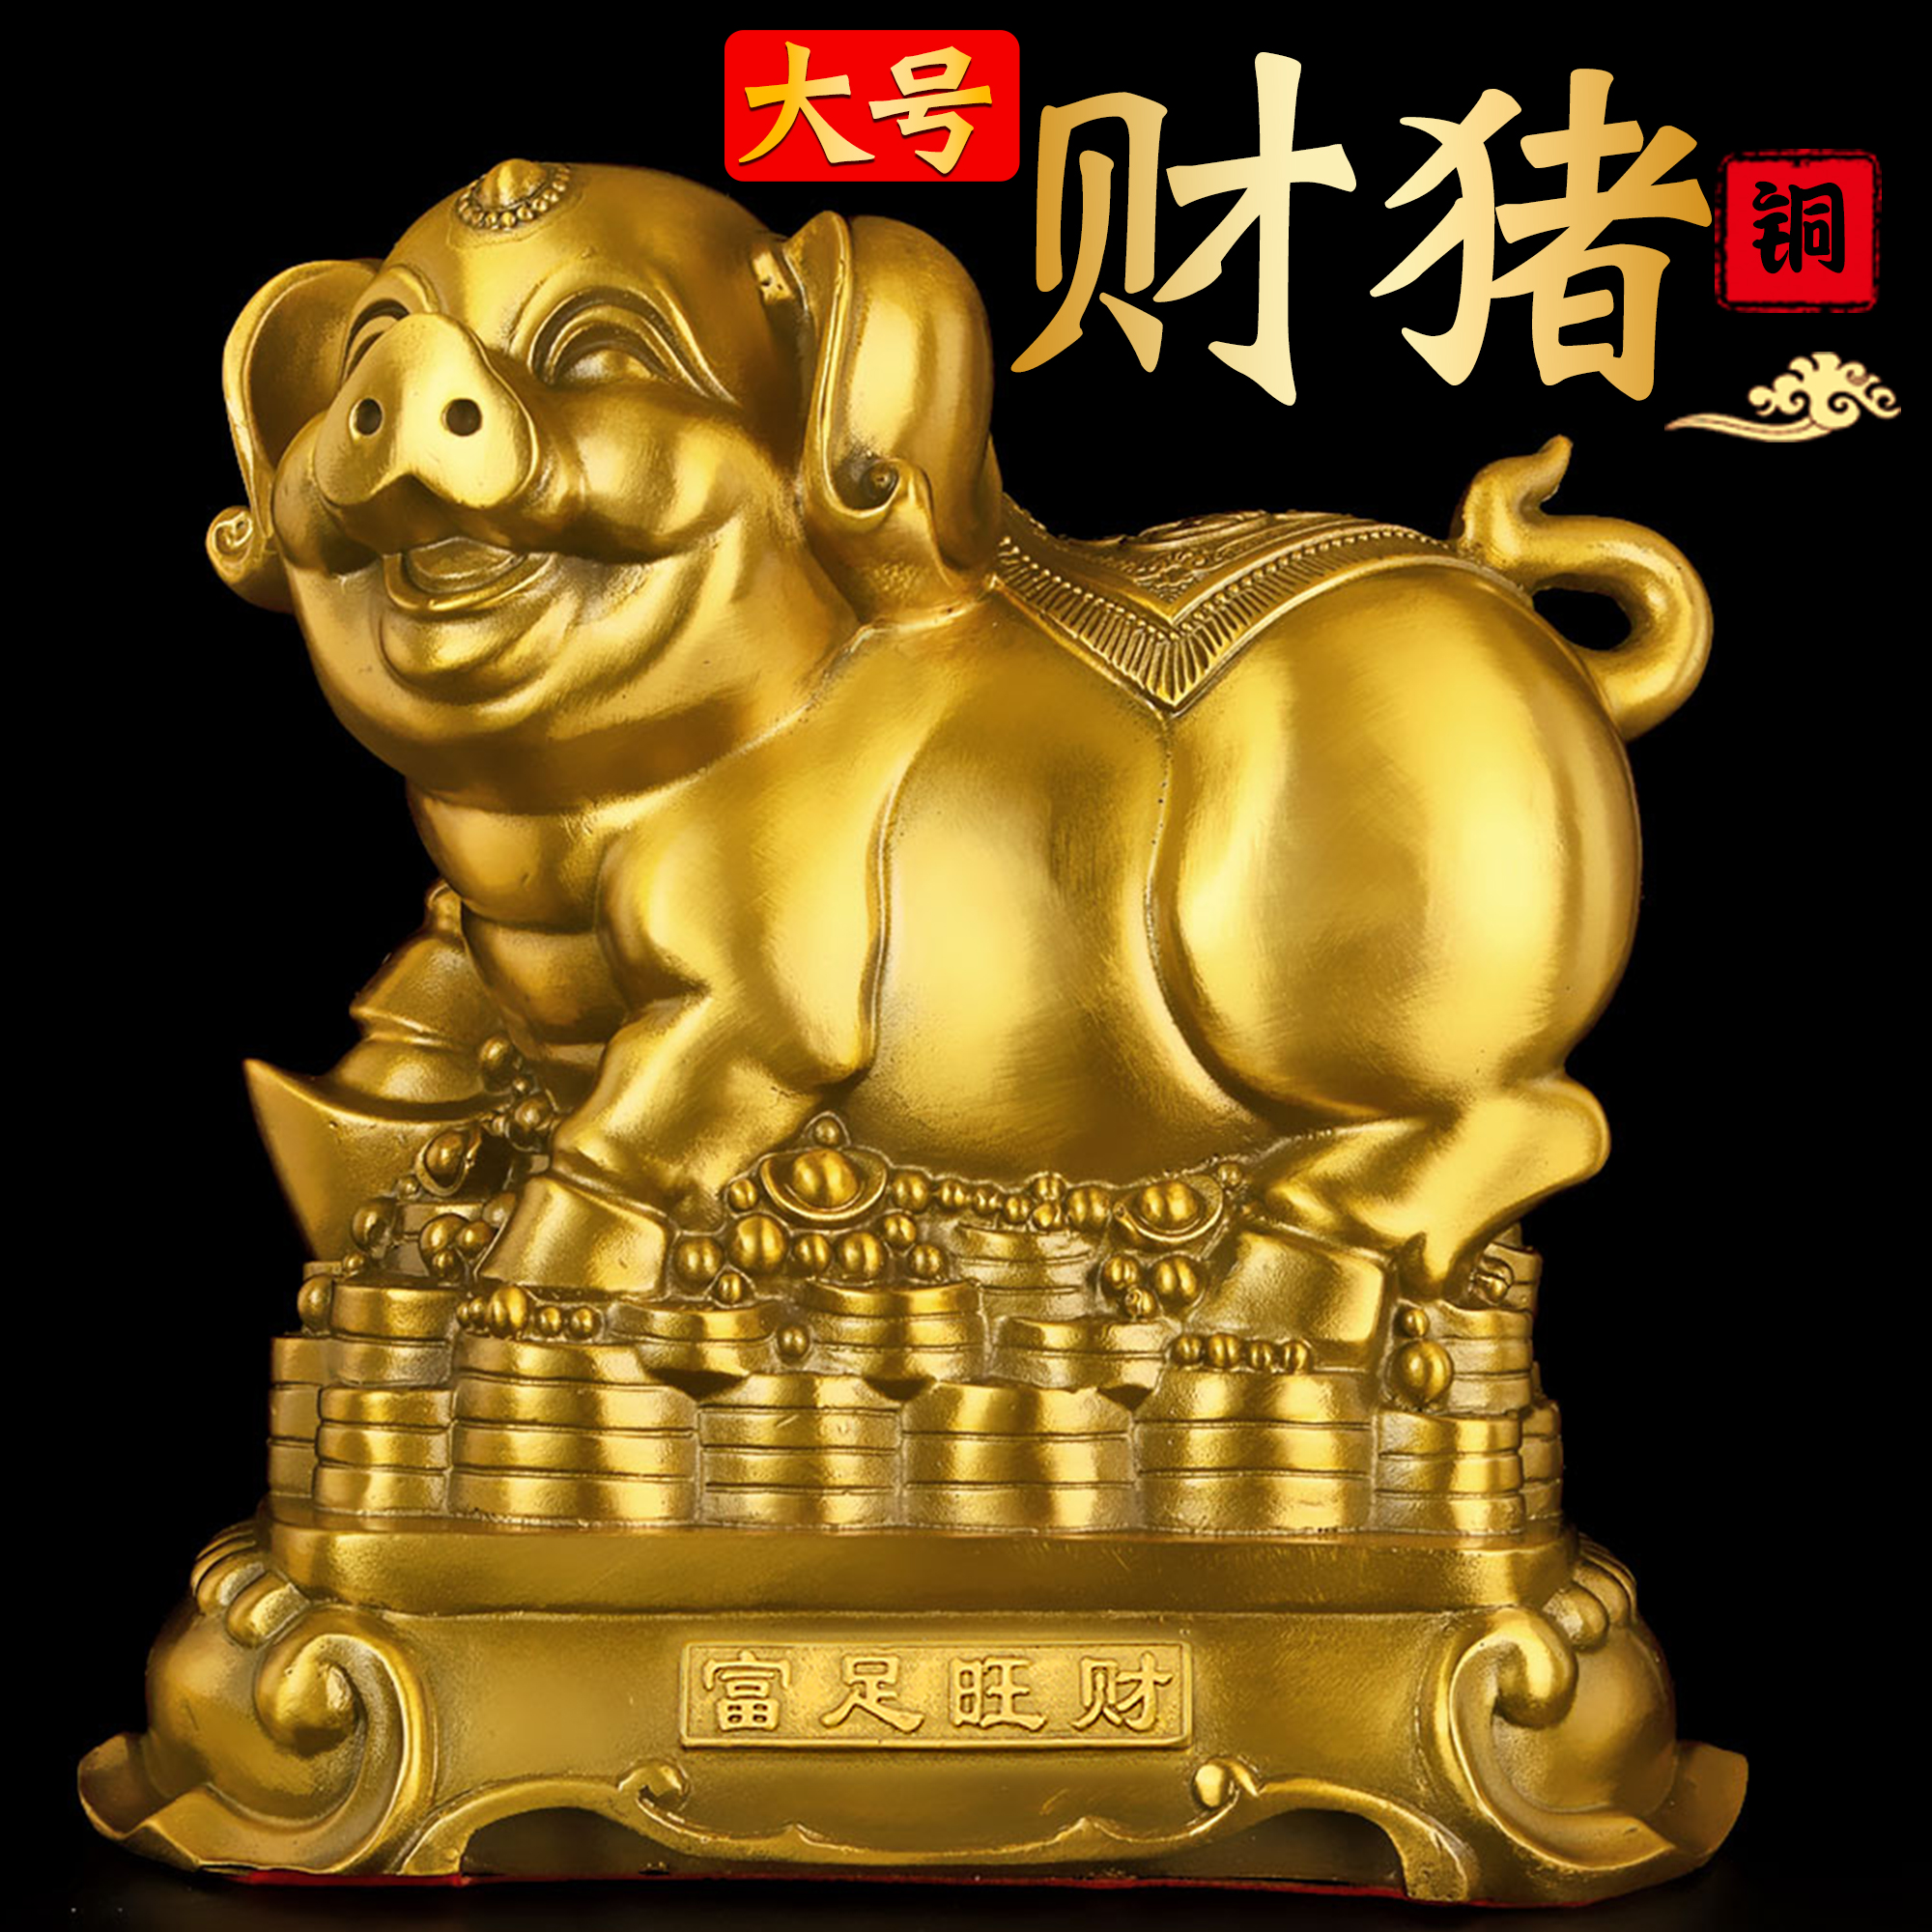 铜猪摆件吉祥物黄铜金猪财猪客厅办公室生肖猪金钱猪存钱罐工艺品